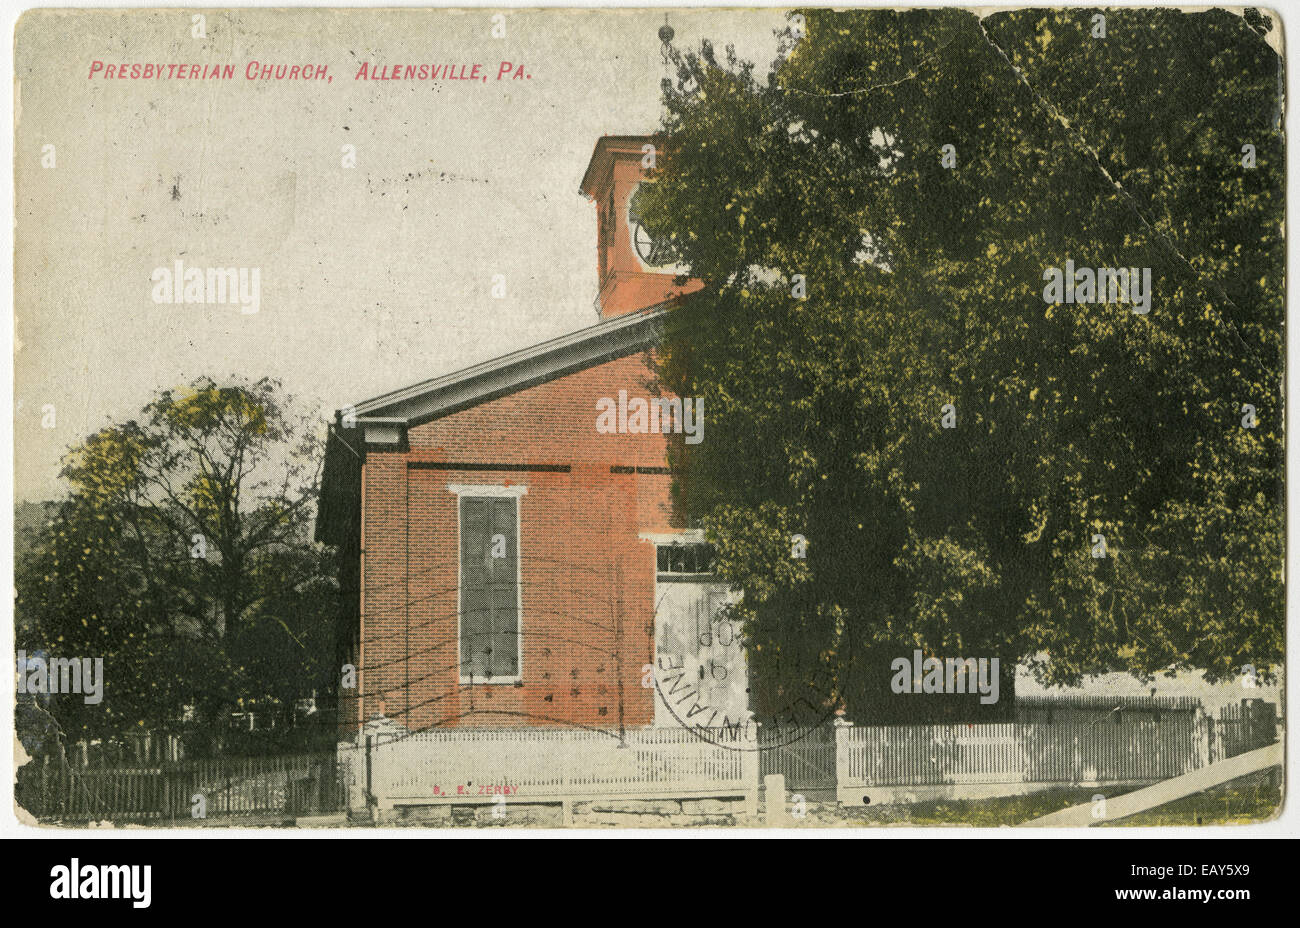 Presbyterianische Kirche in Kentucky, Pennsylvania nach einer Pre-1923 Postkarte von RG-428 Postkartensammlung, Stockfoto